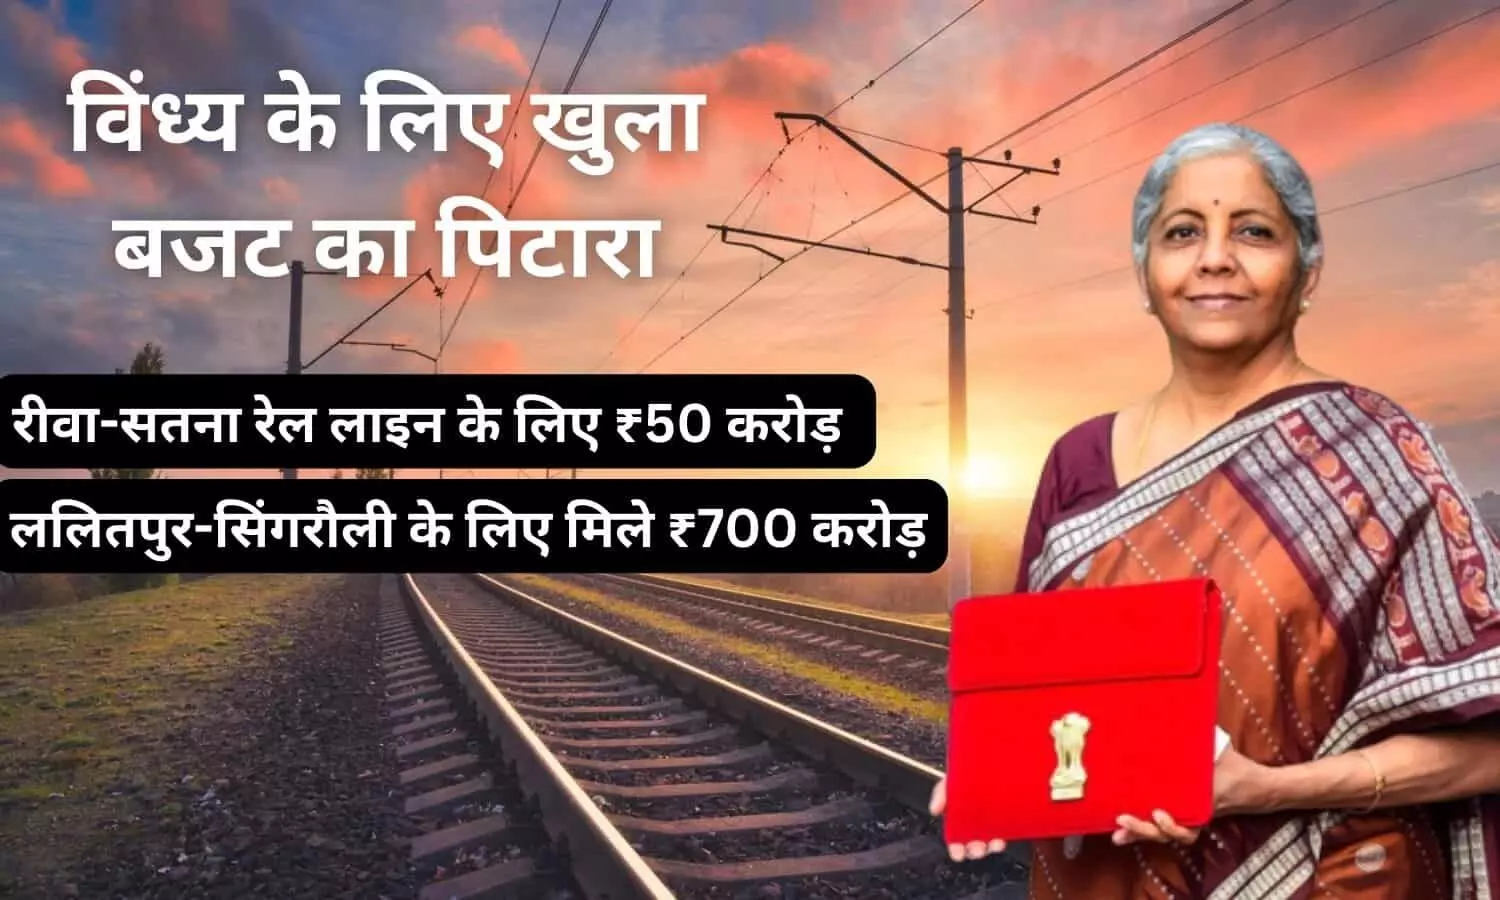 विंध्य के लिए खुला बजट का पिटारा: रीवा-सतना रेल लाइन दोहरीकरण के लिए ₹50 करोड़ की स्वीकृत, ललितपुर-सिंगरौली नई रेल लाइन के लिए मिले ₹700 करोड़